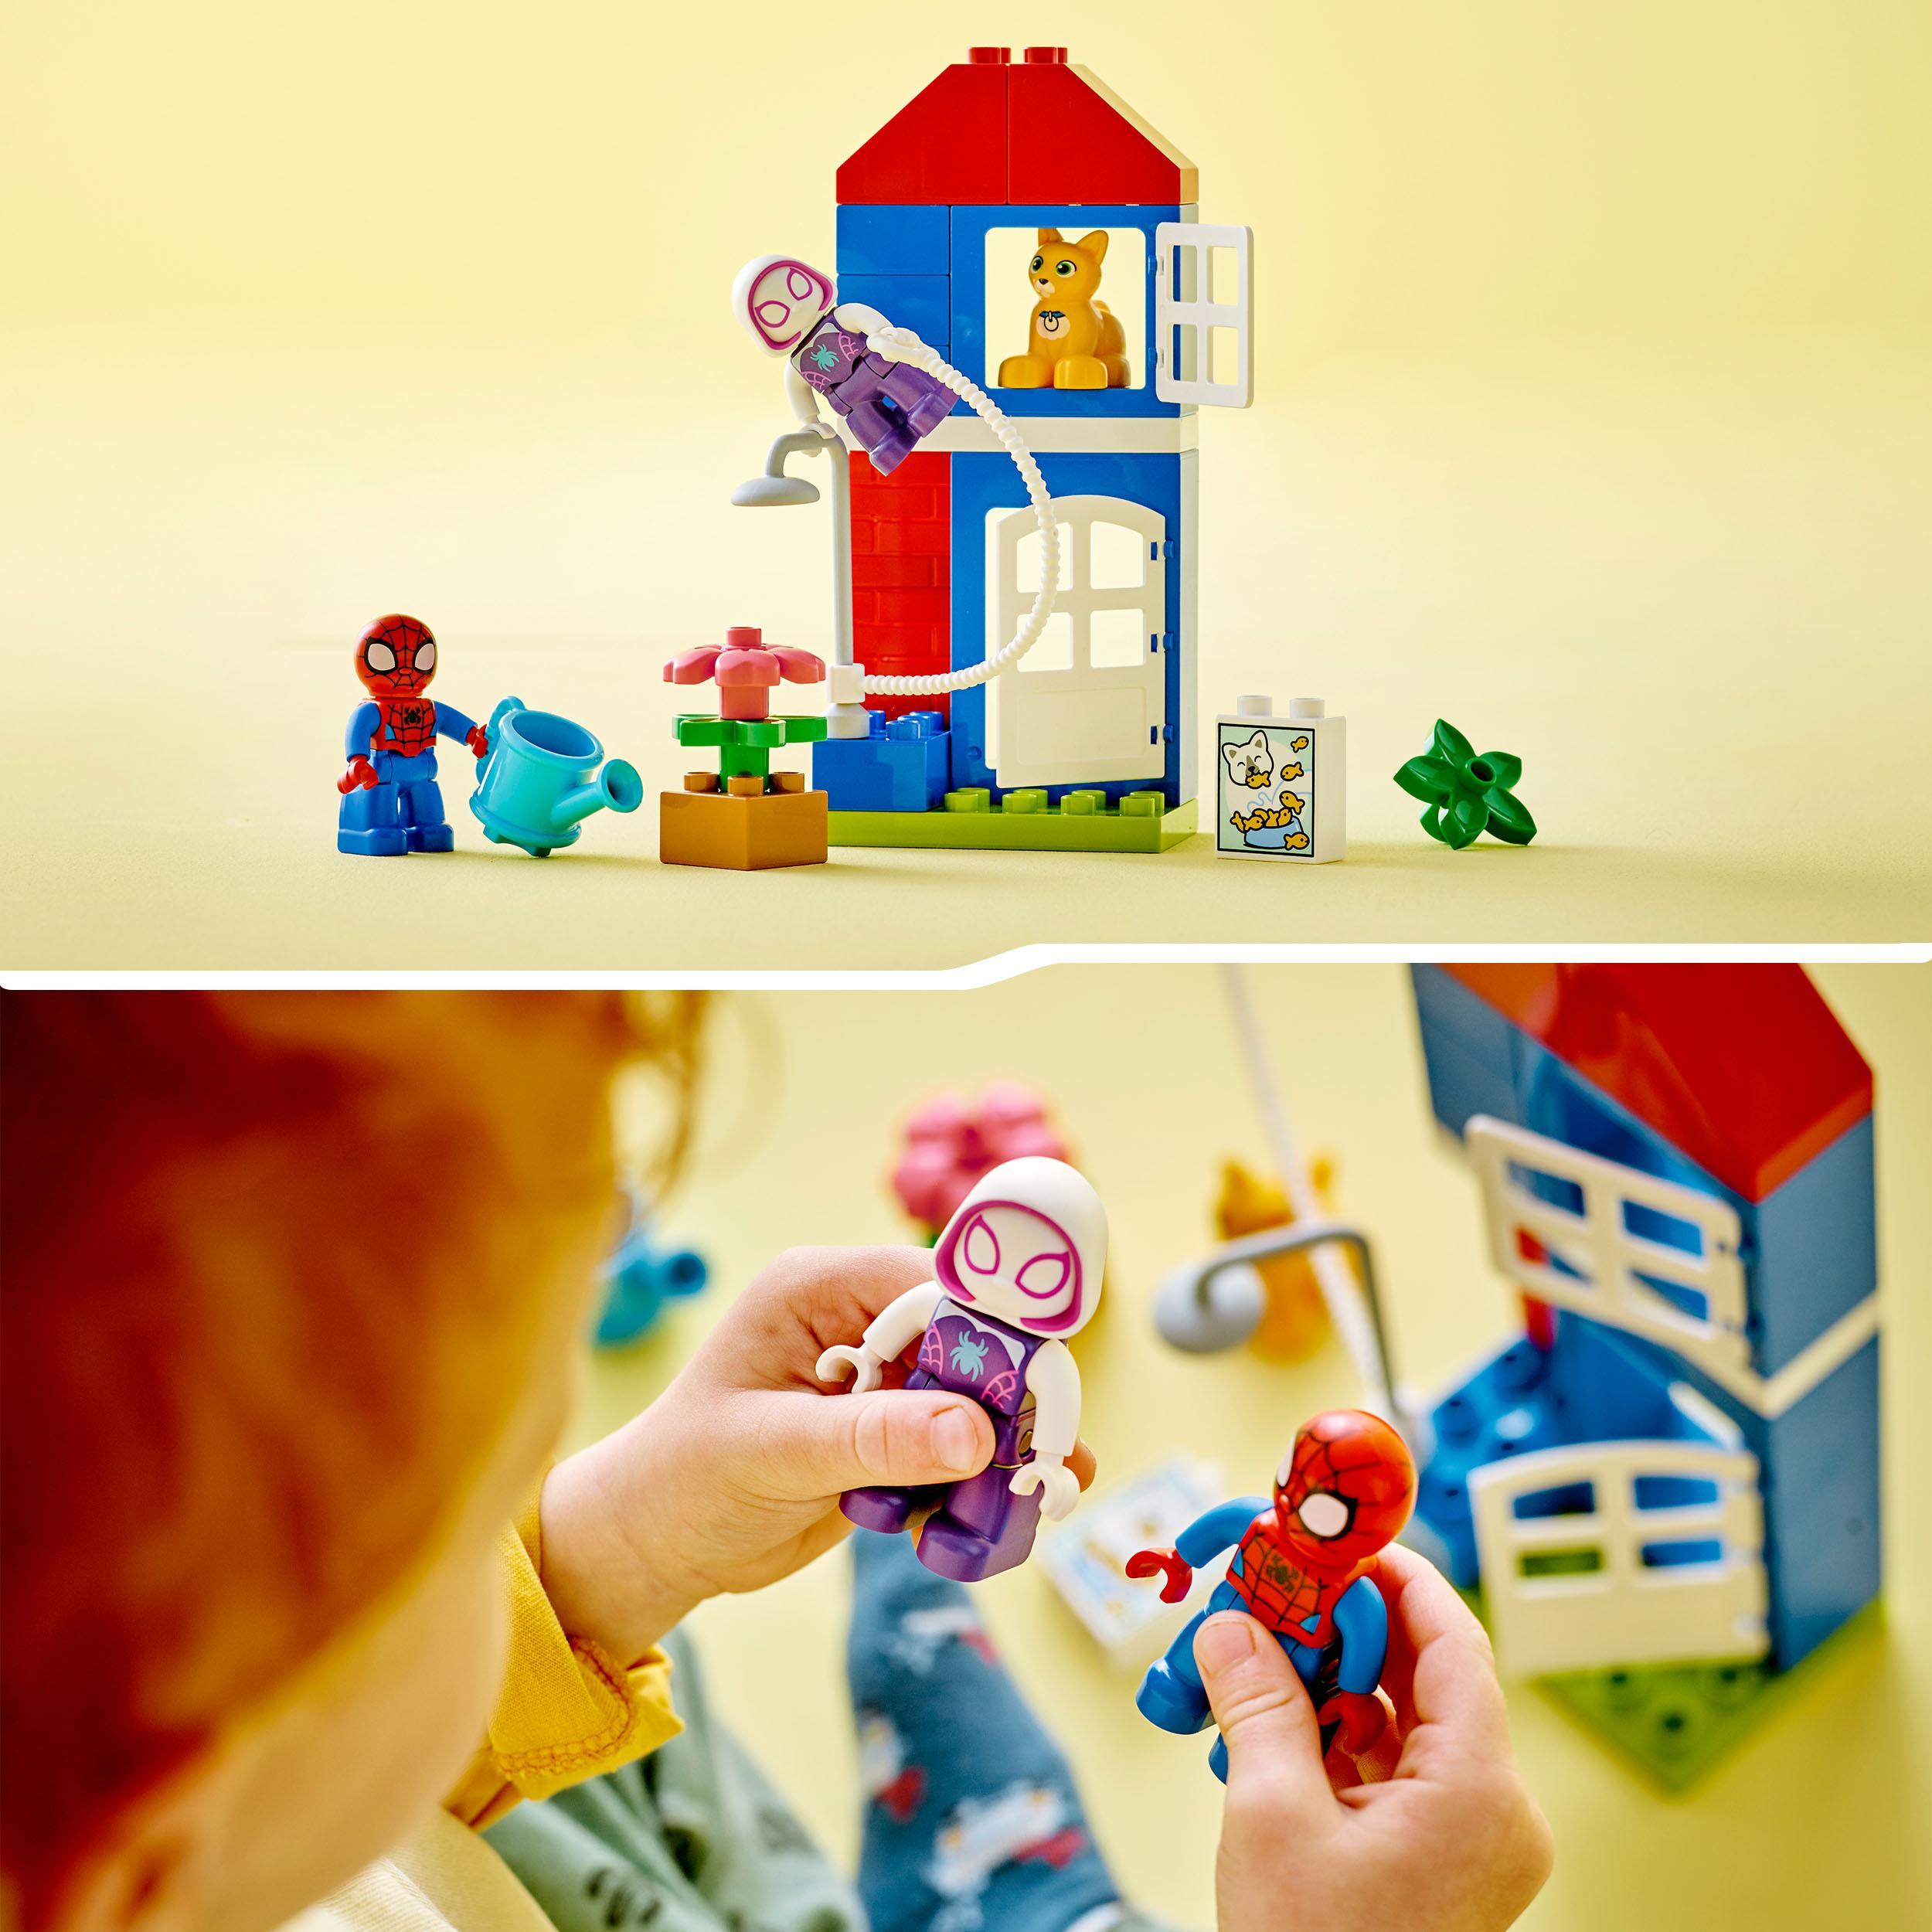 Lego duplo marvel 10995 la casa di spider-man, set di giochi con spidey e i suoi fantastici amici, idea regalo supereroi - LEGO DUPLO, Avengers, Spiderman